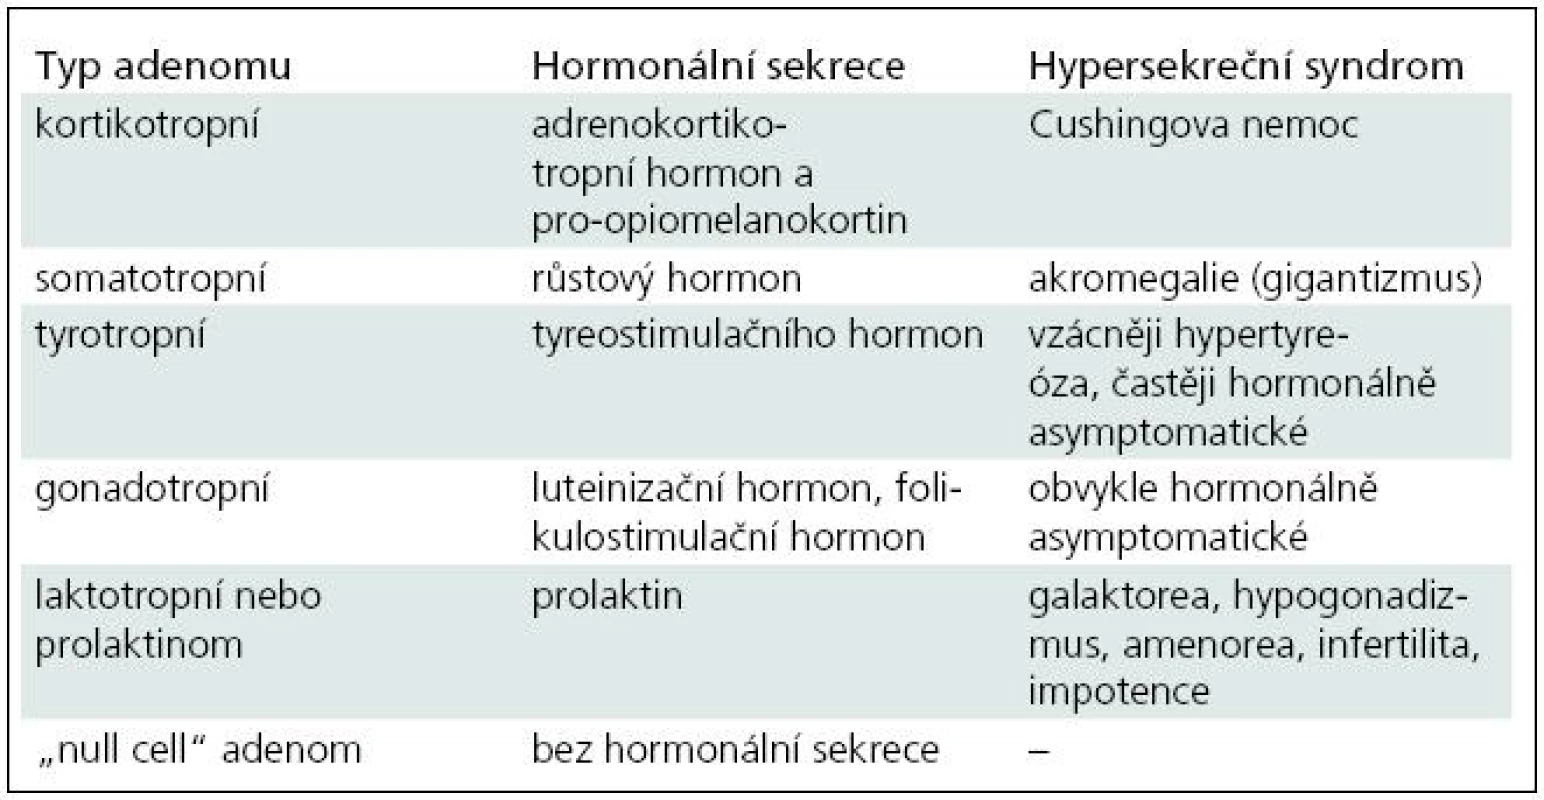 Zjednodušená klasifikace tumorů hypofýzy s uvedením hormonální sekrece a základními hypersekrečními syndromy.